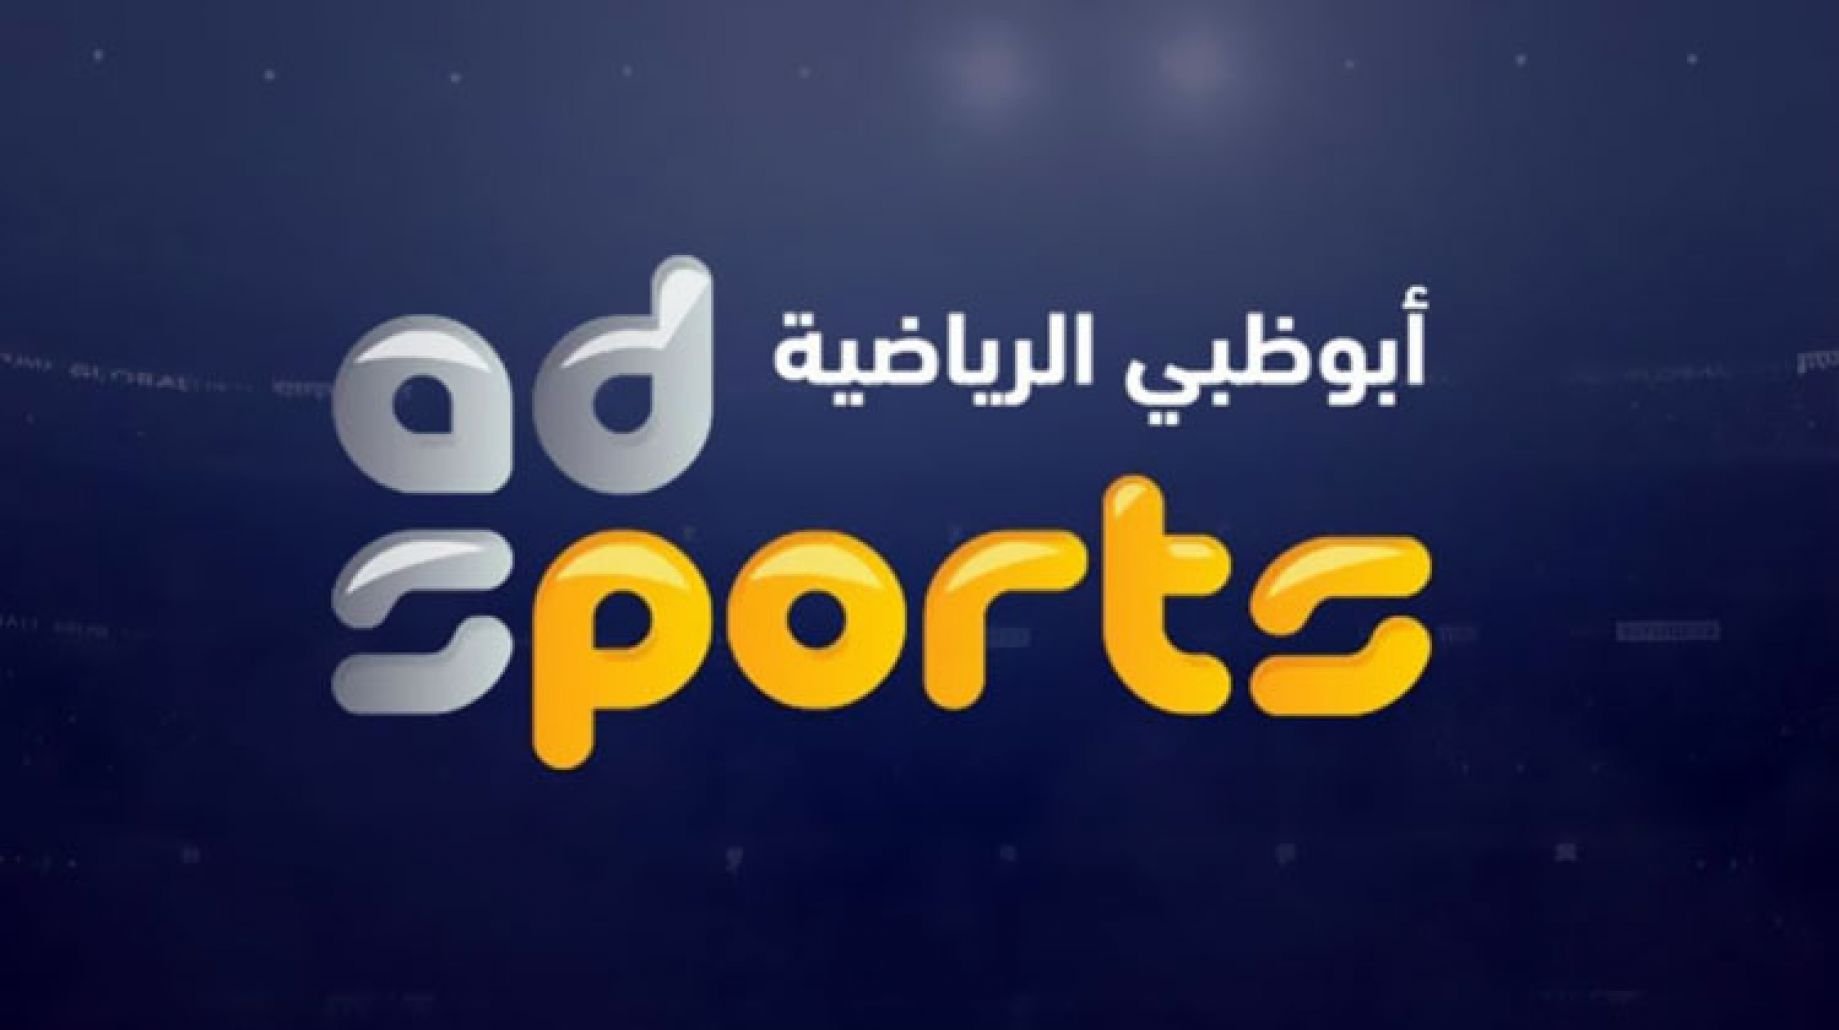 تردد قناة ابوظبي الرياضية 2 الجديد 2022 على النايل سات